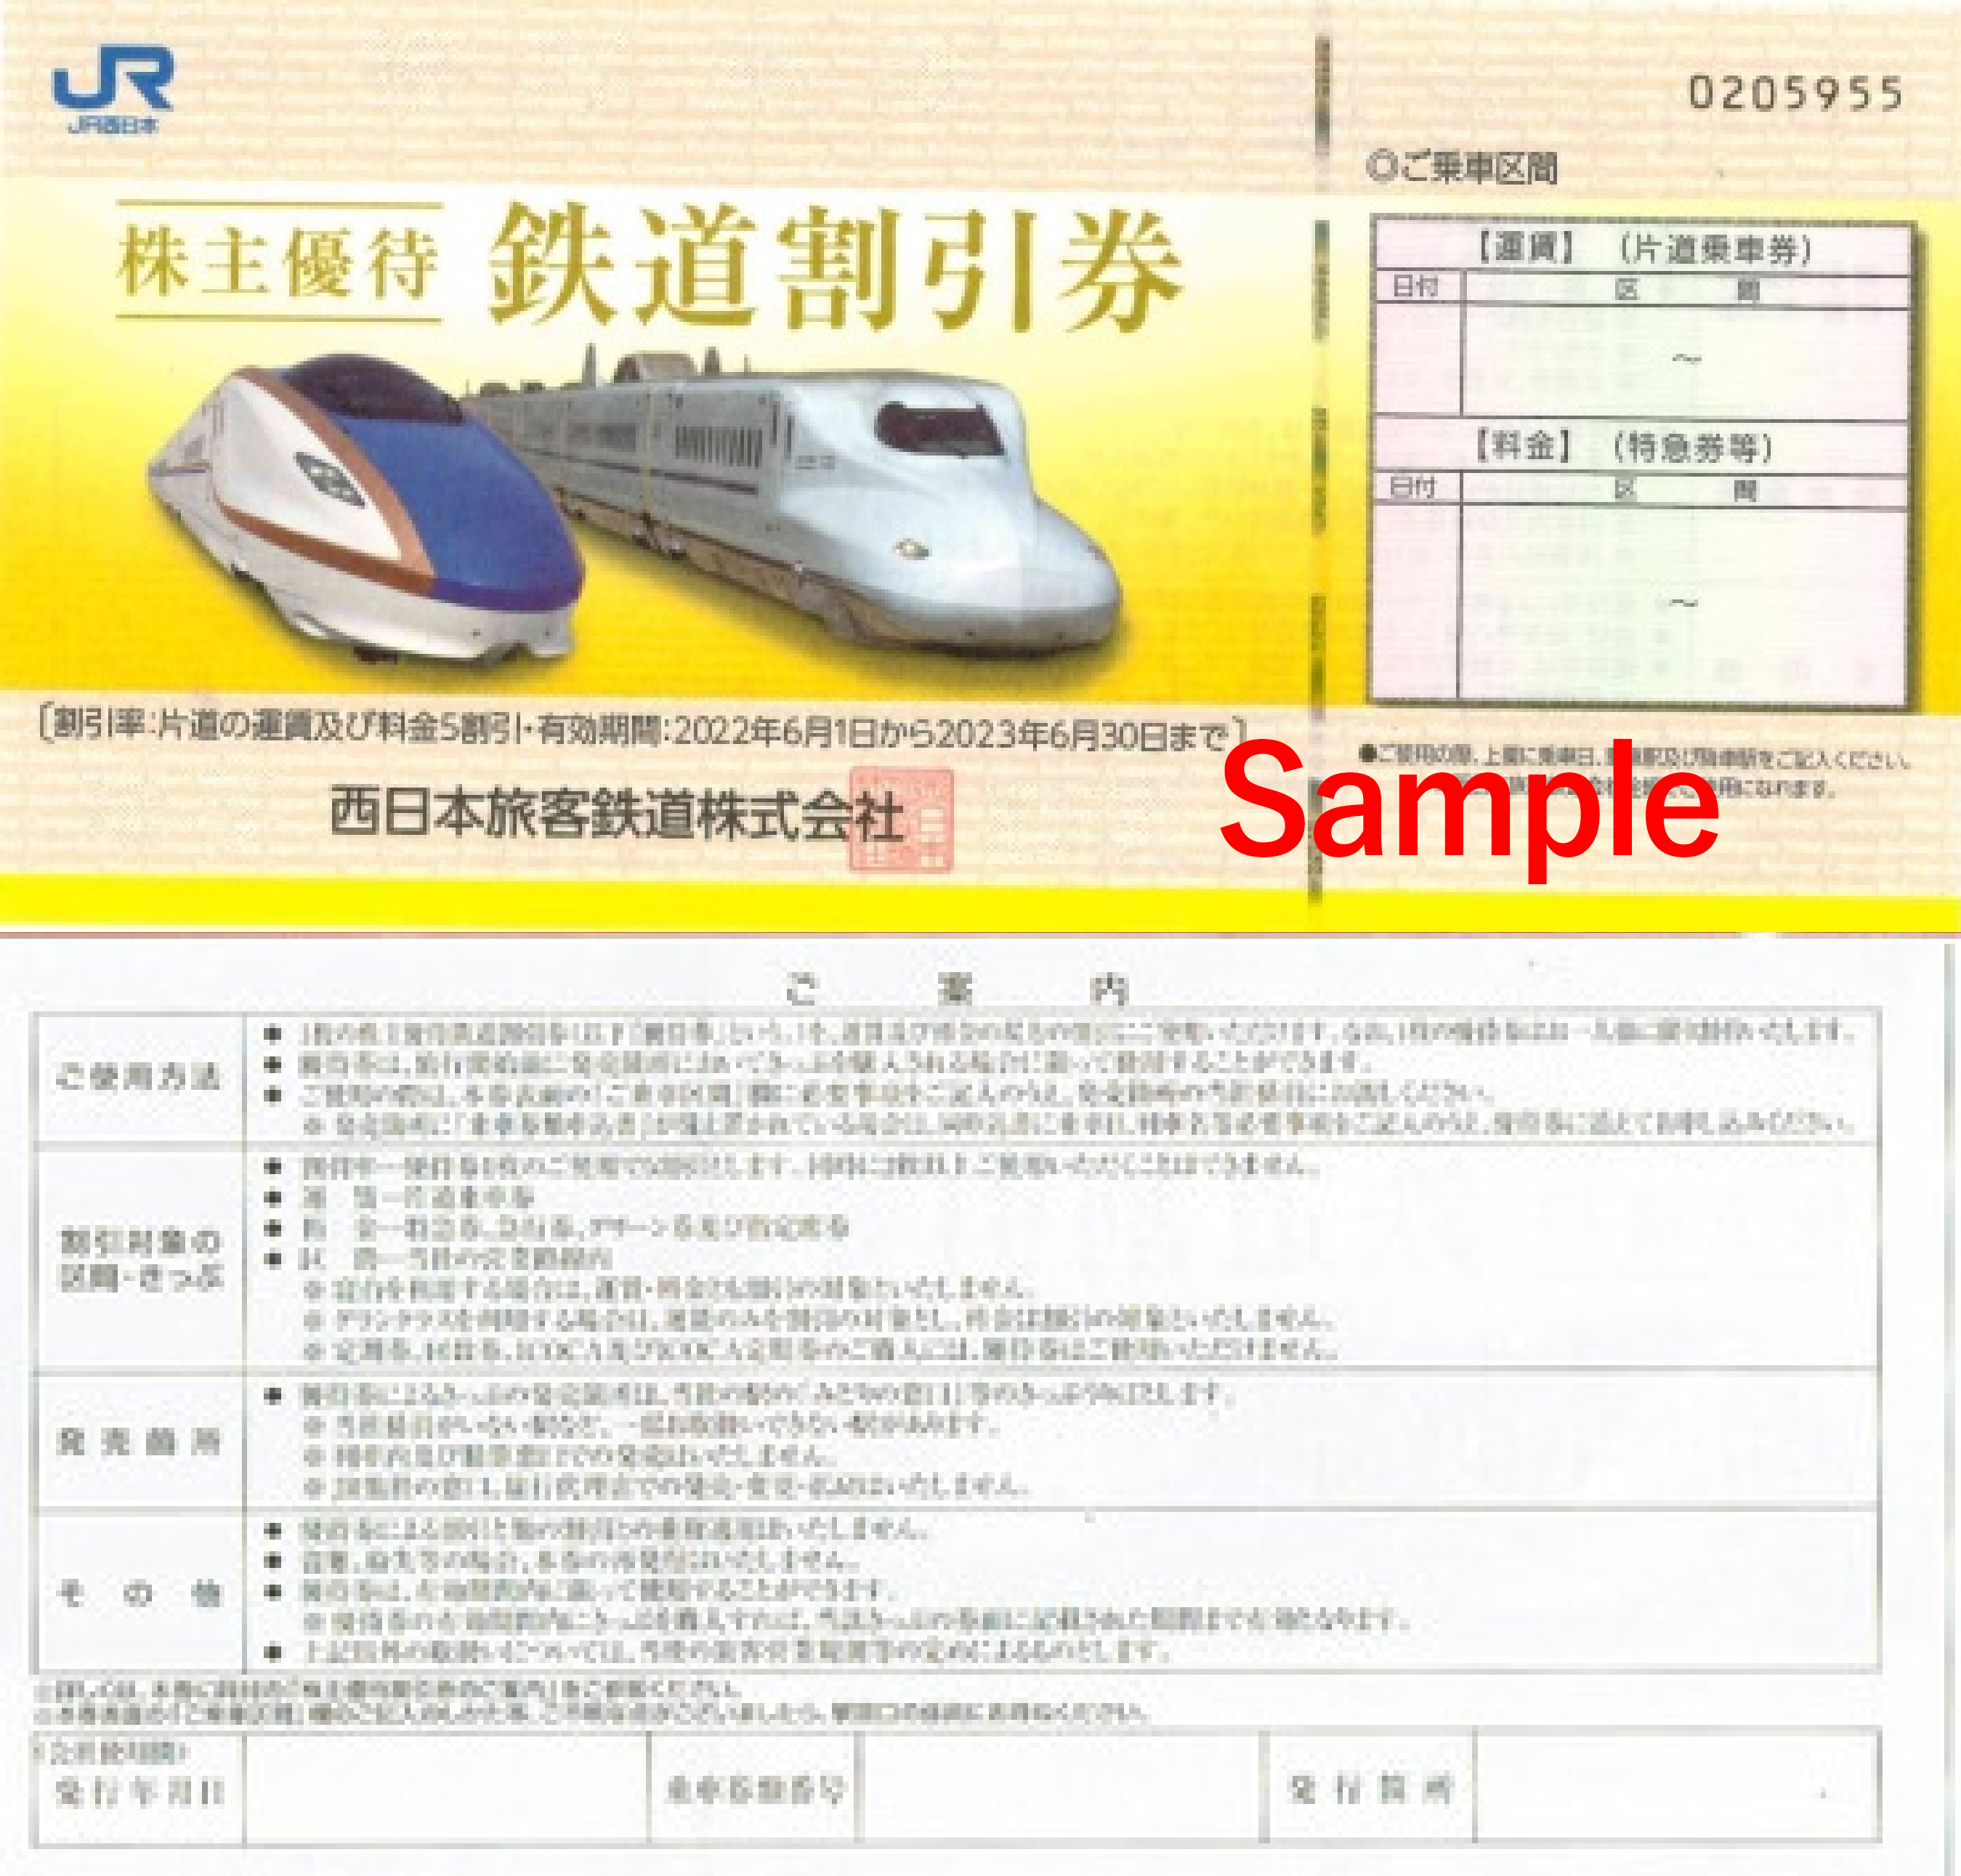 JR 西日本 株主優待 鉄道割引券 - www.xtreme.aero